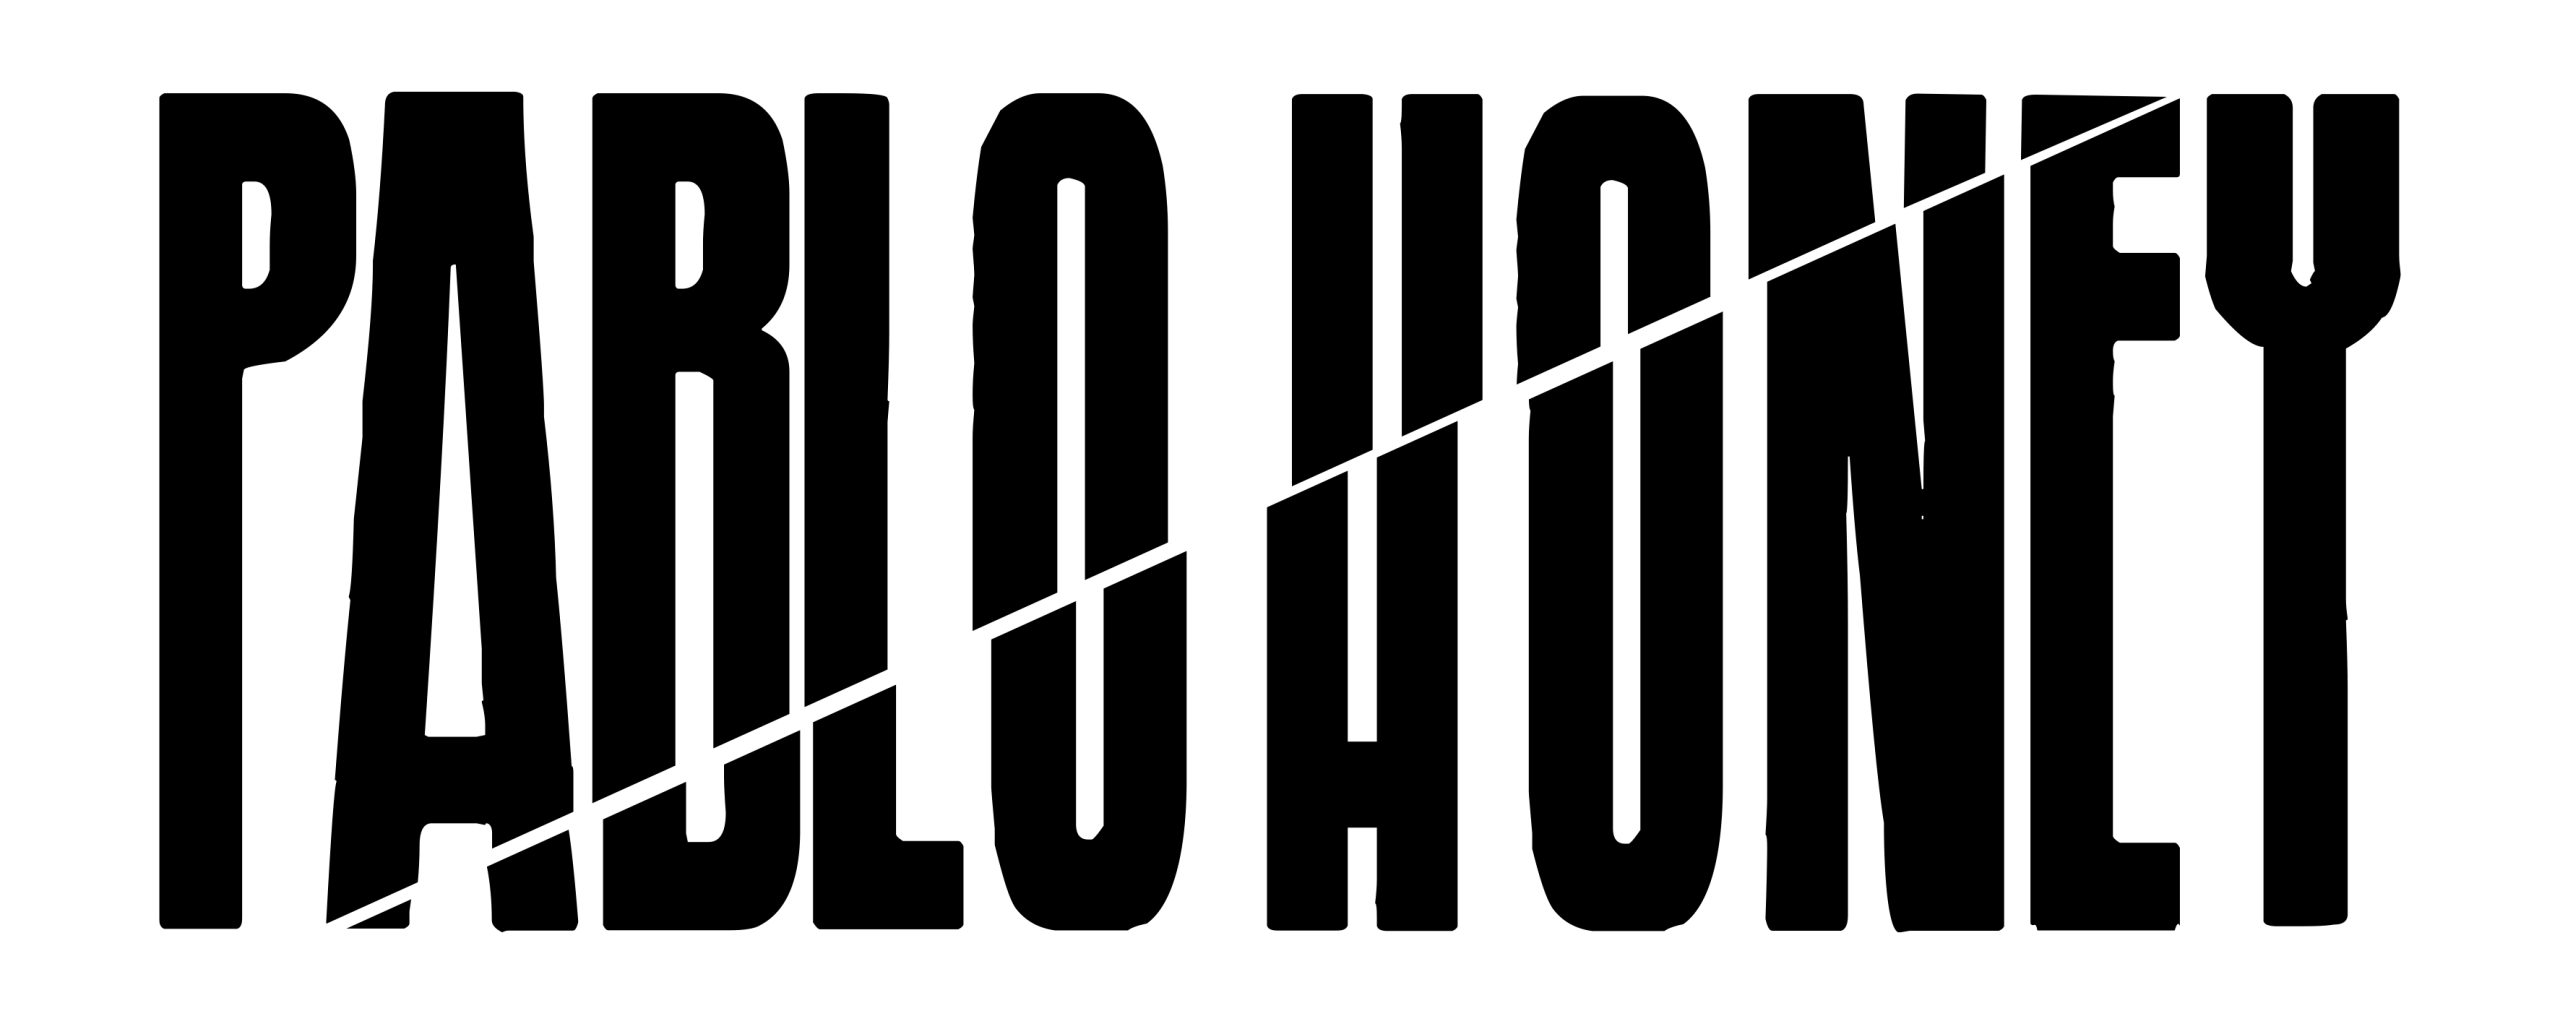 Logo Pablo Honey